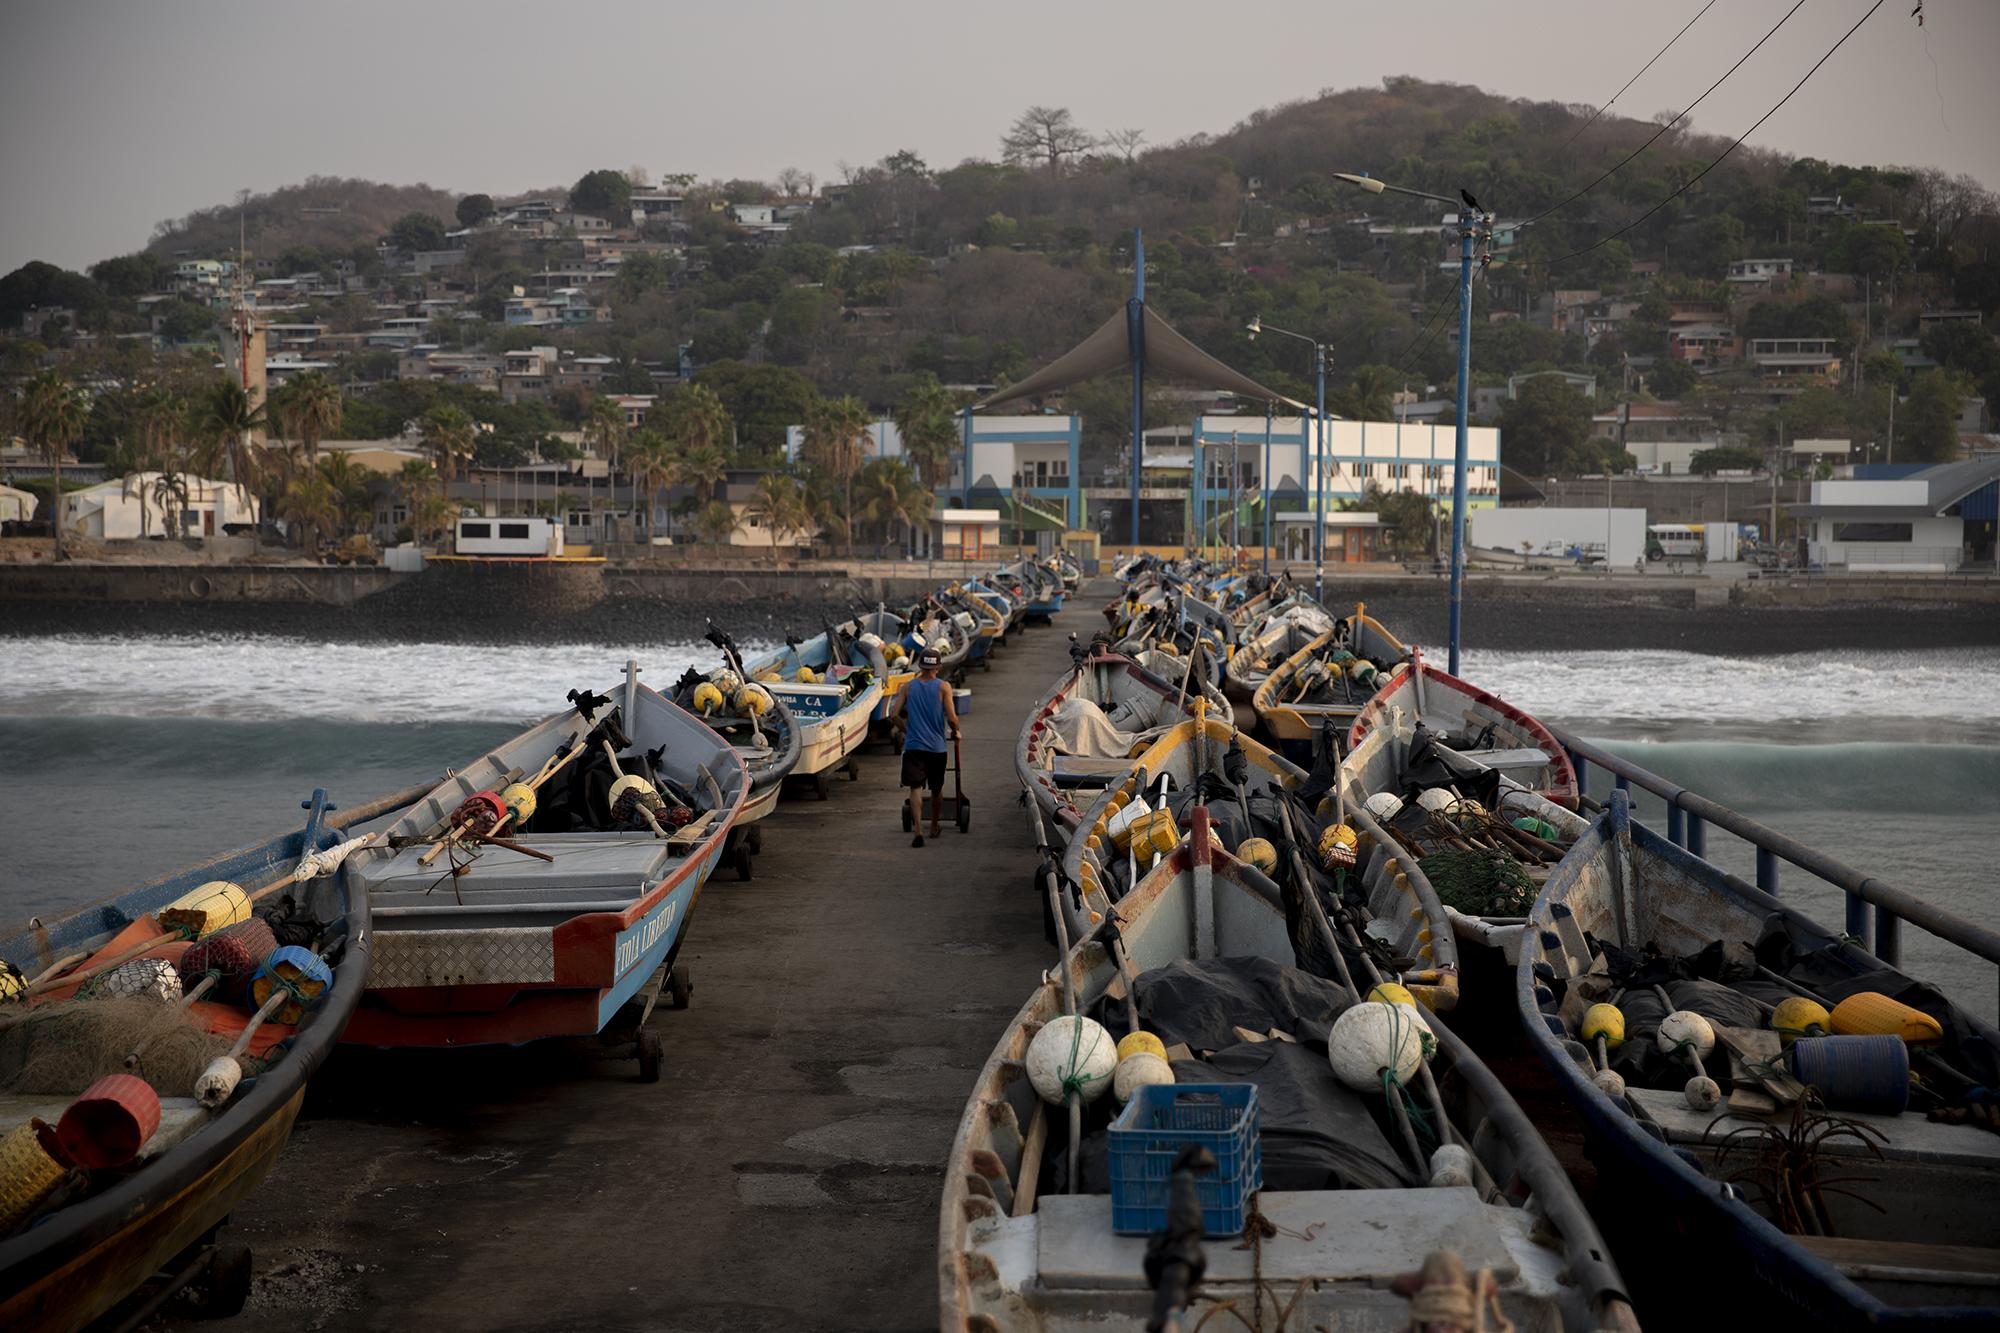 La mayoría de lanchas de los pescadores del Puerto de La Libertad permanecen varadas en el muelle debido a la casi nula demanda de mariscos y la falta de turistas en la zona. Foto de El Faro: Carlos Barrera